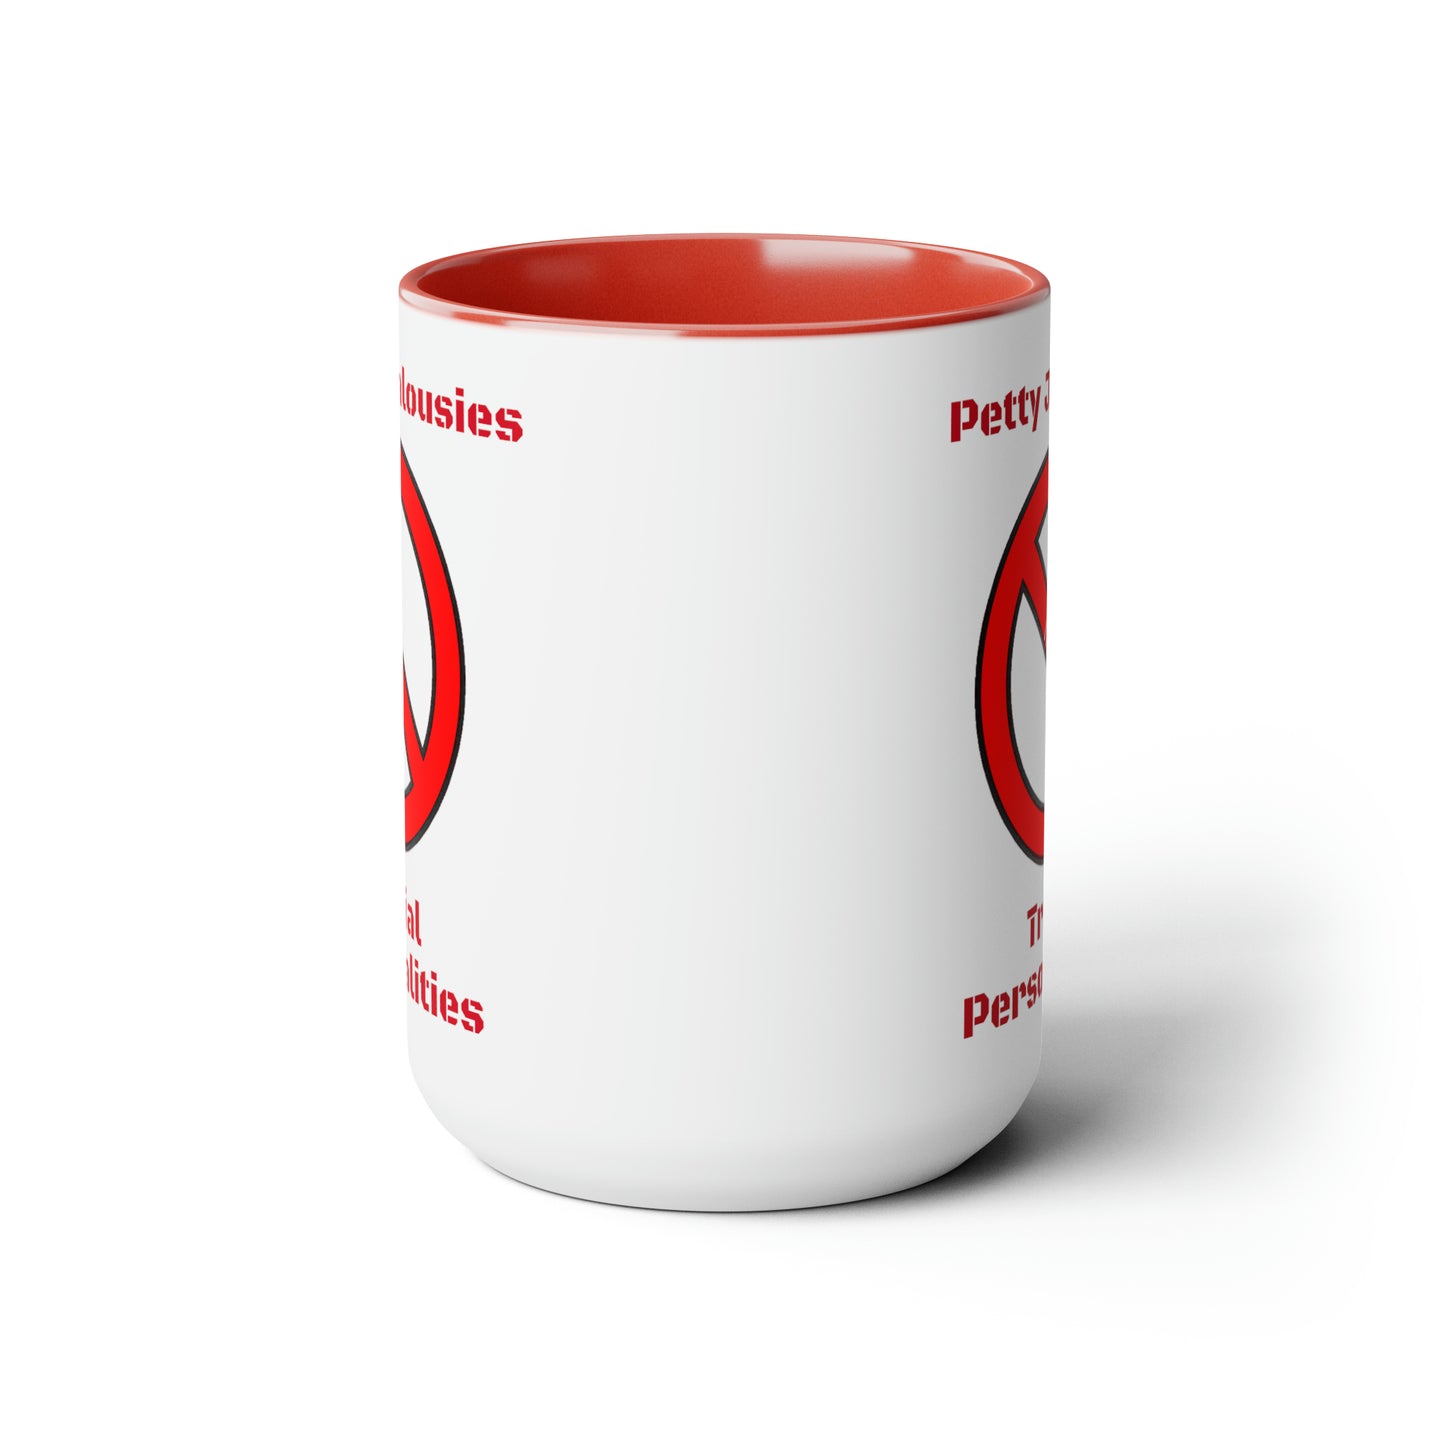 NO Mug! Two-Tone Coffee Mugs, 15oz